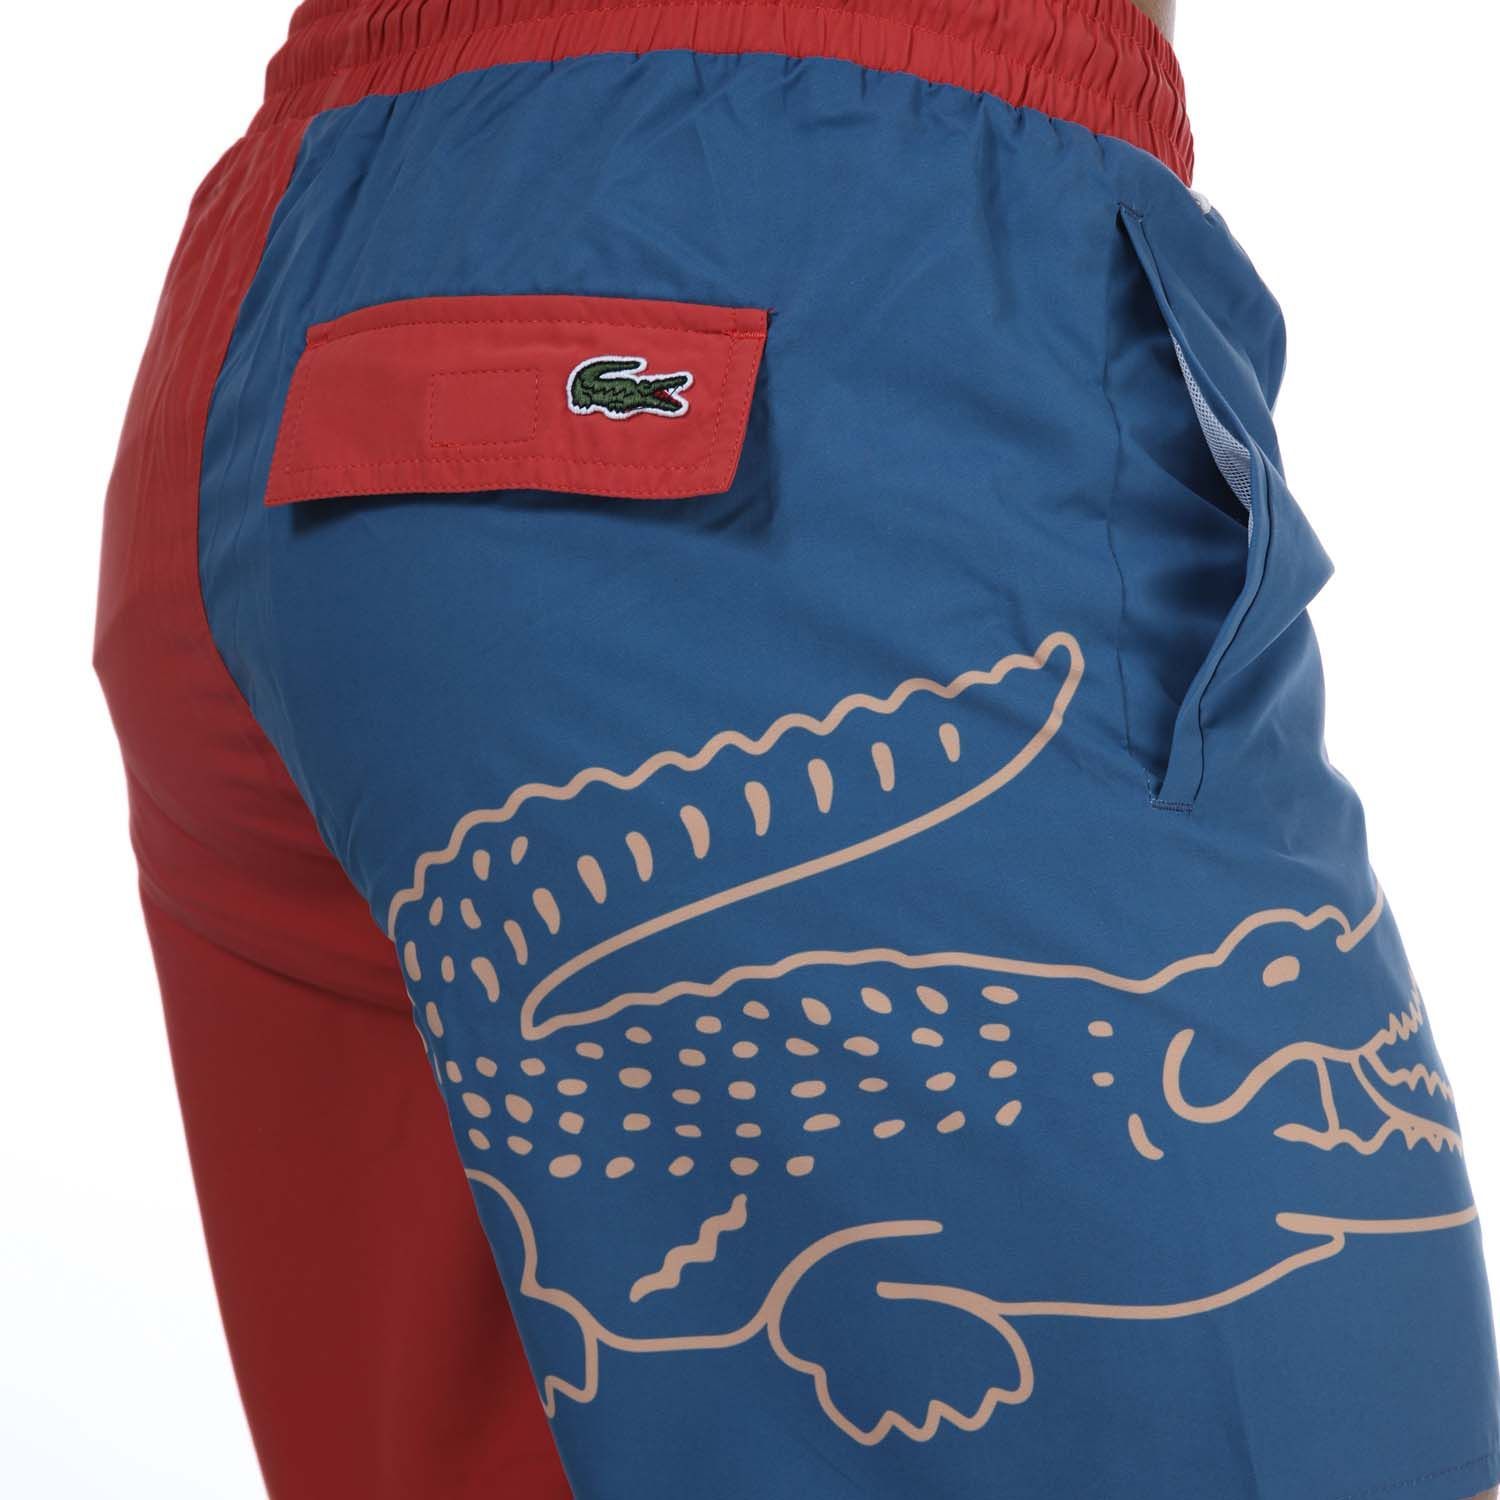 Lacoste tweekleurige zwemshort met krokodilopdruk voor heren, rood-marineblauw